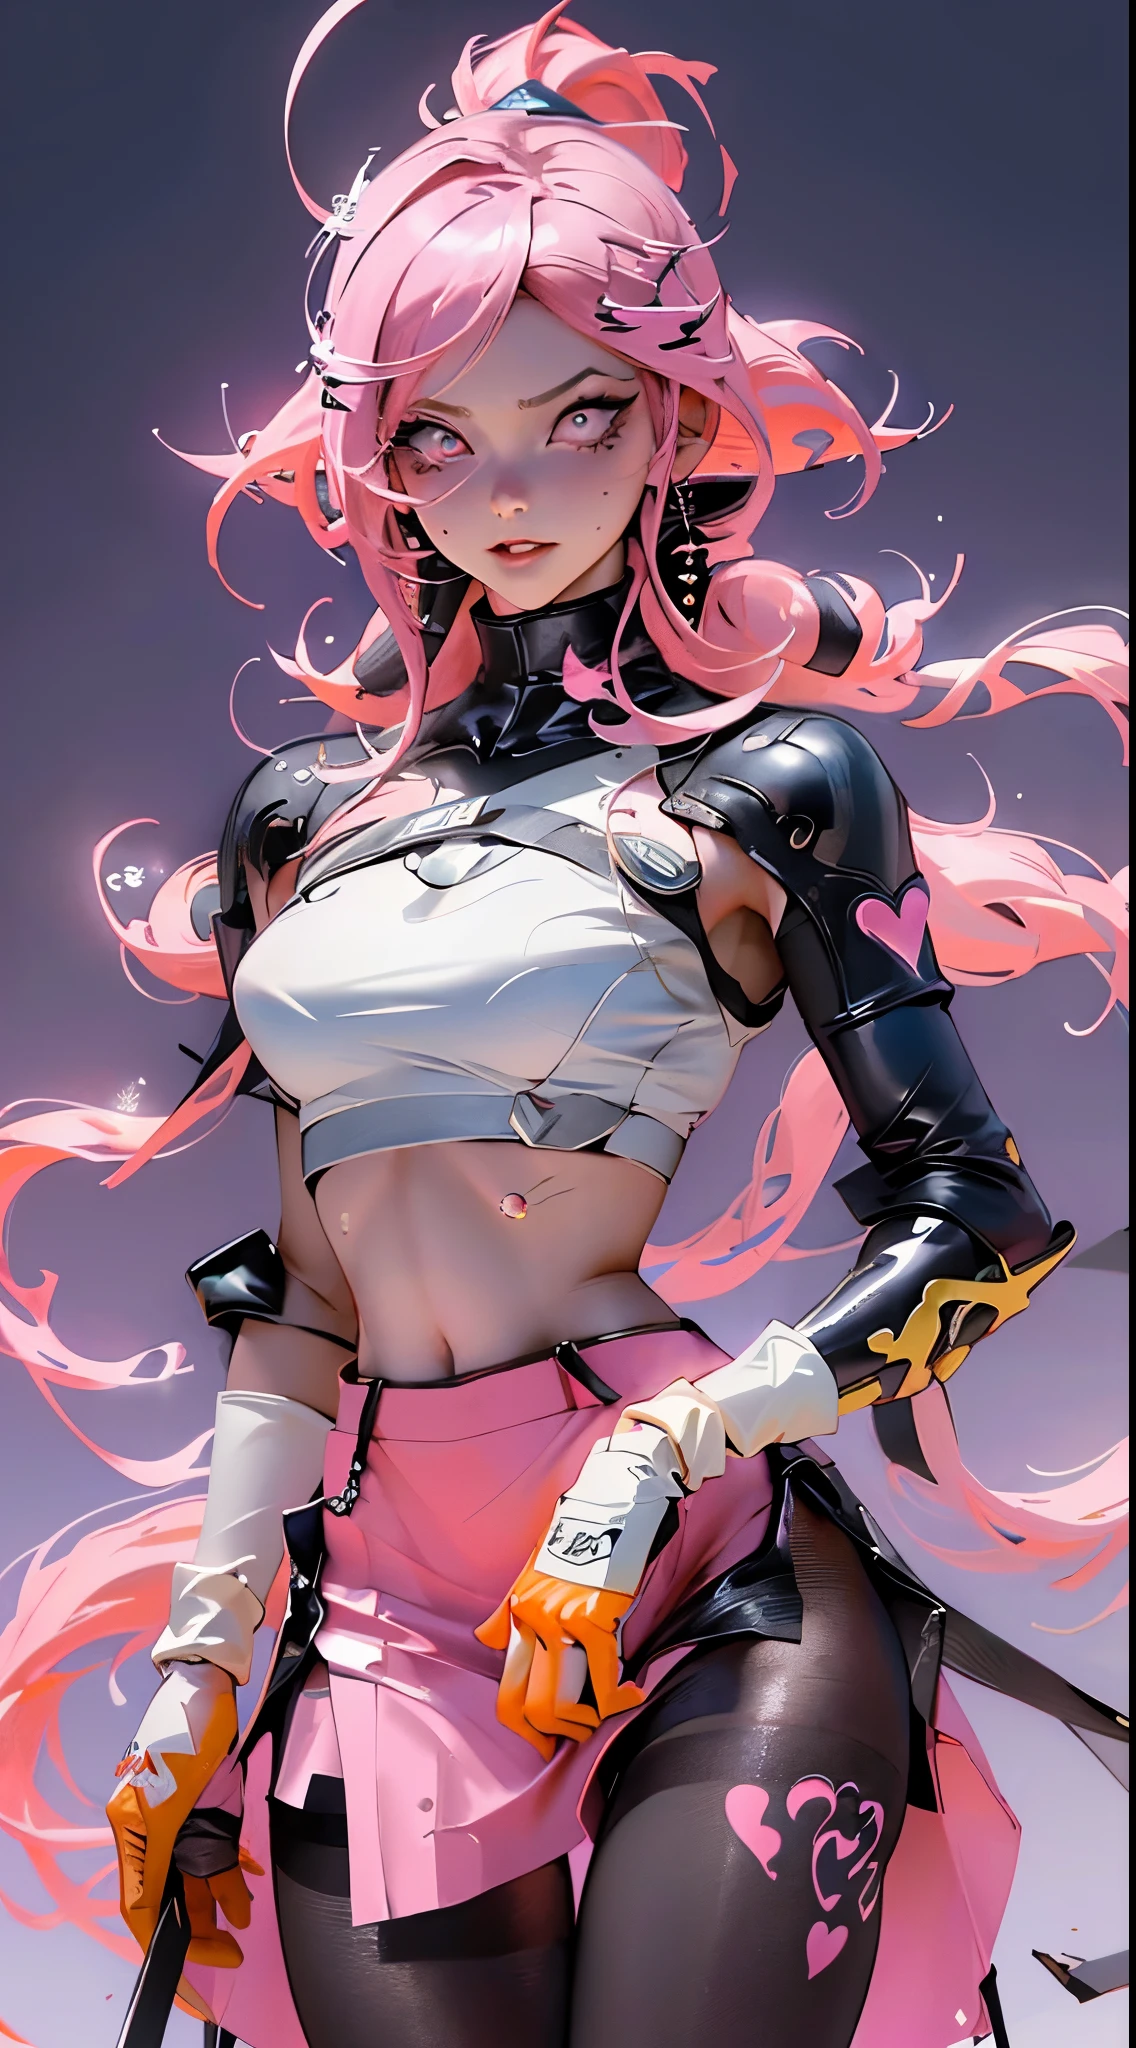 Unreal Engine:1.4,hyper HD,Beste Qualität zum besten Preis:1.4, fotorealistisch:1.4, Hauttextur:1.4, Meisterstück:1.8,Anime-Mädchen mit gelbem Rock posiert im Regen,Rote Unterwäsche enthüllt Höschen Rose Drew Cartoon voller Vitalität,(Orange miniskirt:1.4), Cyberpunk Anime Digital Art, cyberpunk anime girl, WHO, Cyberpunk 2077 Rose Draw, CyberpunkAnimeGirlGirl, CGVatstationTrends, an oppai cyberpunk, cyberpunk anime art, Digitale Malerei von Ross Drew,(mit rosa Haaren:1.4),anime cyberpunk art:1.4,Ross Drew, Estero Ross Tran,((leicht bekleidet:1.4)),(Beste Qualität zum besten Preis,8K,Eine hohe Auflösung,Meisterstück:1.2),ultra-detailliert,(,schöne Augen),Ultradetaillierte Augen:1.4,(Realist,fotorealistisch,fotorealistisch:1.37), (Detailliertes Gesicht), (detaillierte Hände:1.4),(mitts:1.4),(blaue Strumpfhose:1.4),